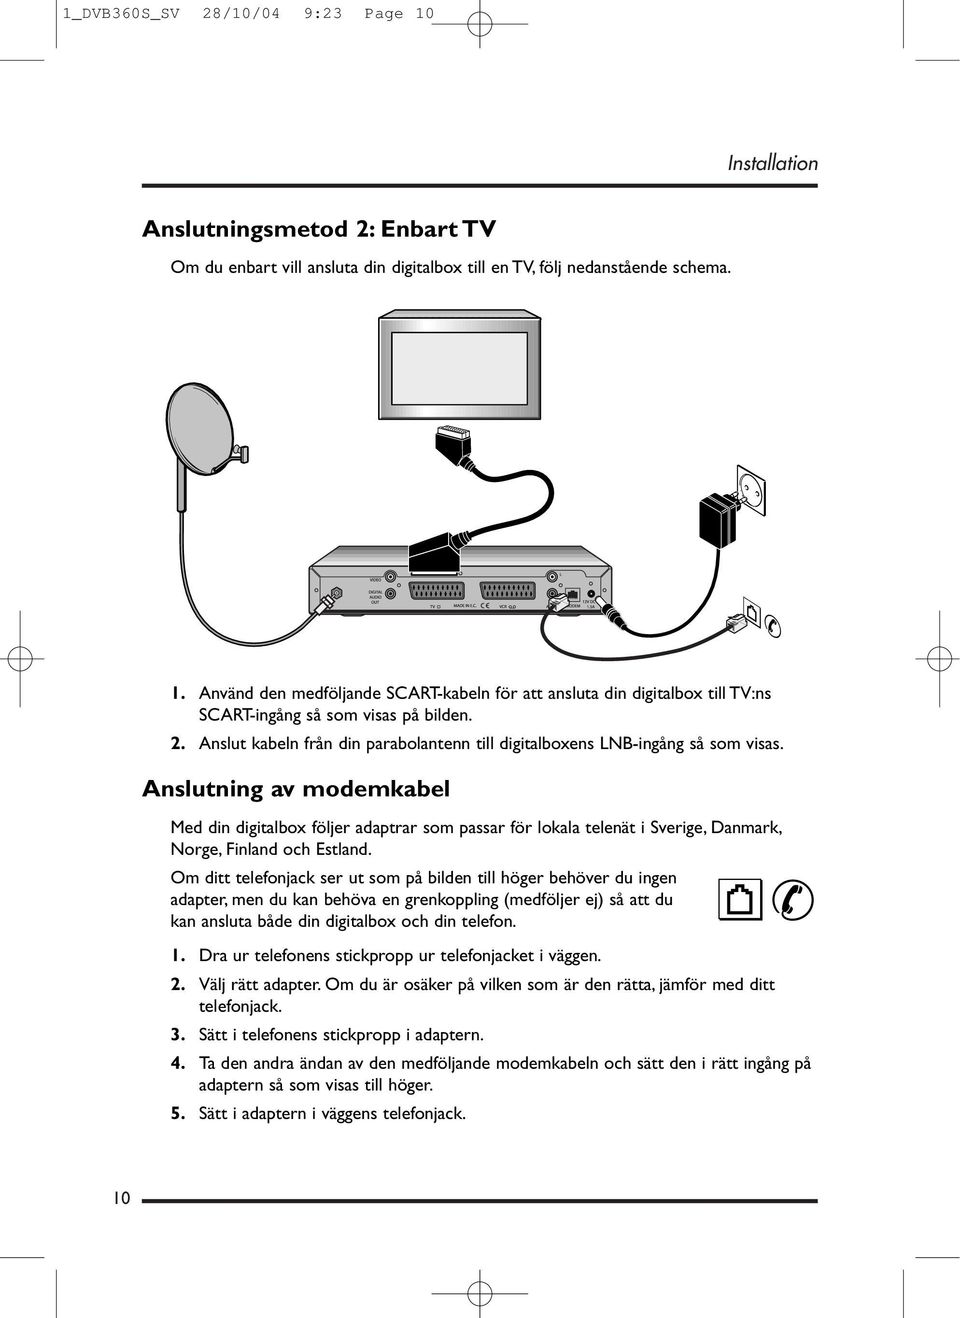 Anslutning av modemkabel Med din digitalbox följer adaptrar som passar för lokala telenät i Sverige, Danmark, Norge, Finland och Estland.